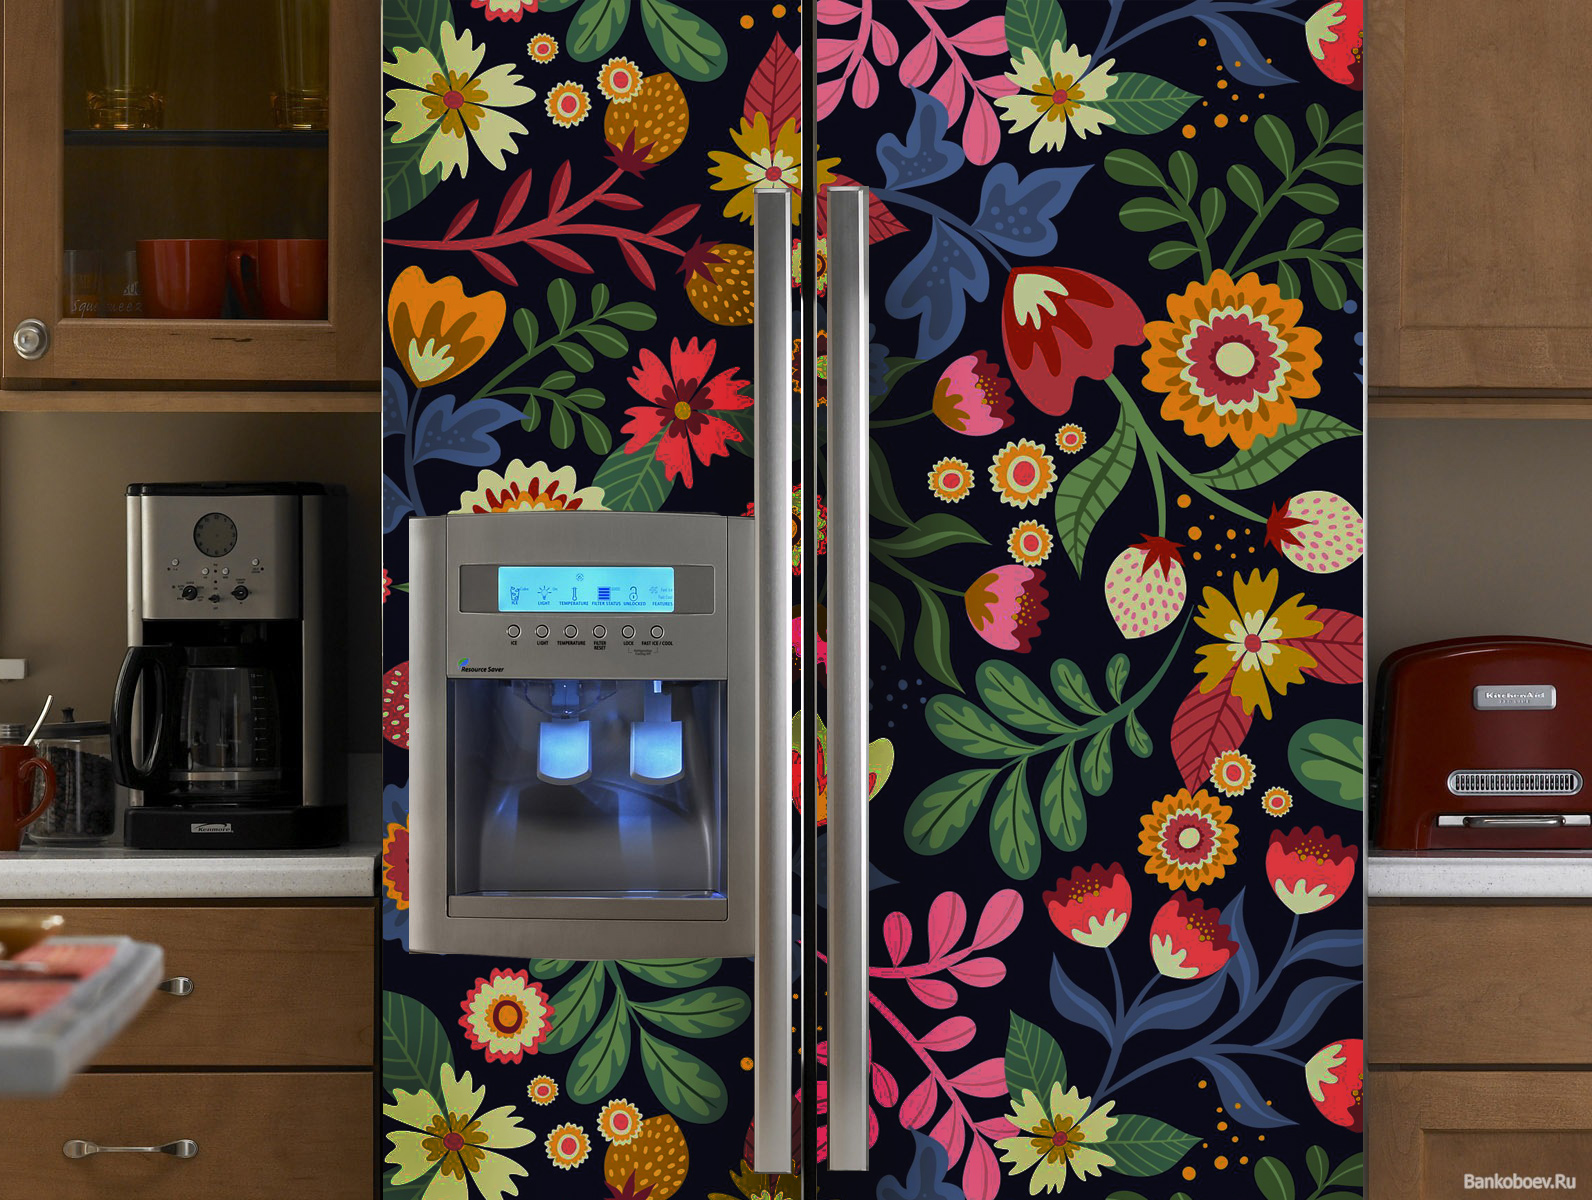 наклейка на холодильник орнамент фото, вінілова наклейка на холодильник фото, наклейка на холодильник з народним розписом фото, наклейка на холодильник фото, оновити старий холодильник фото, наклейки на кухню фото